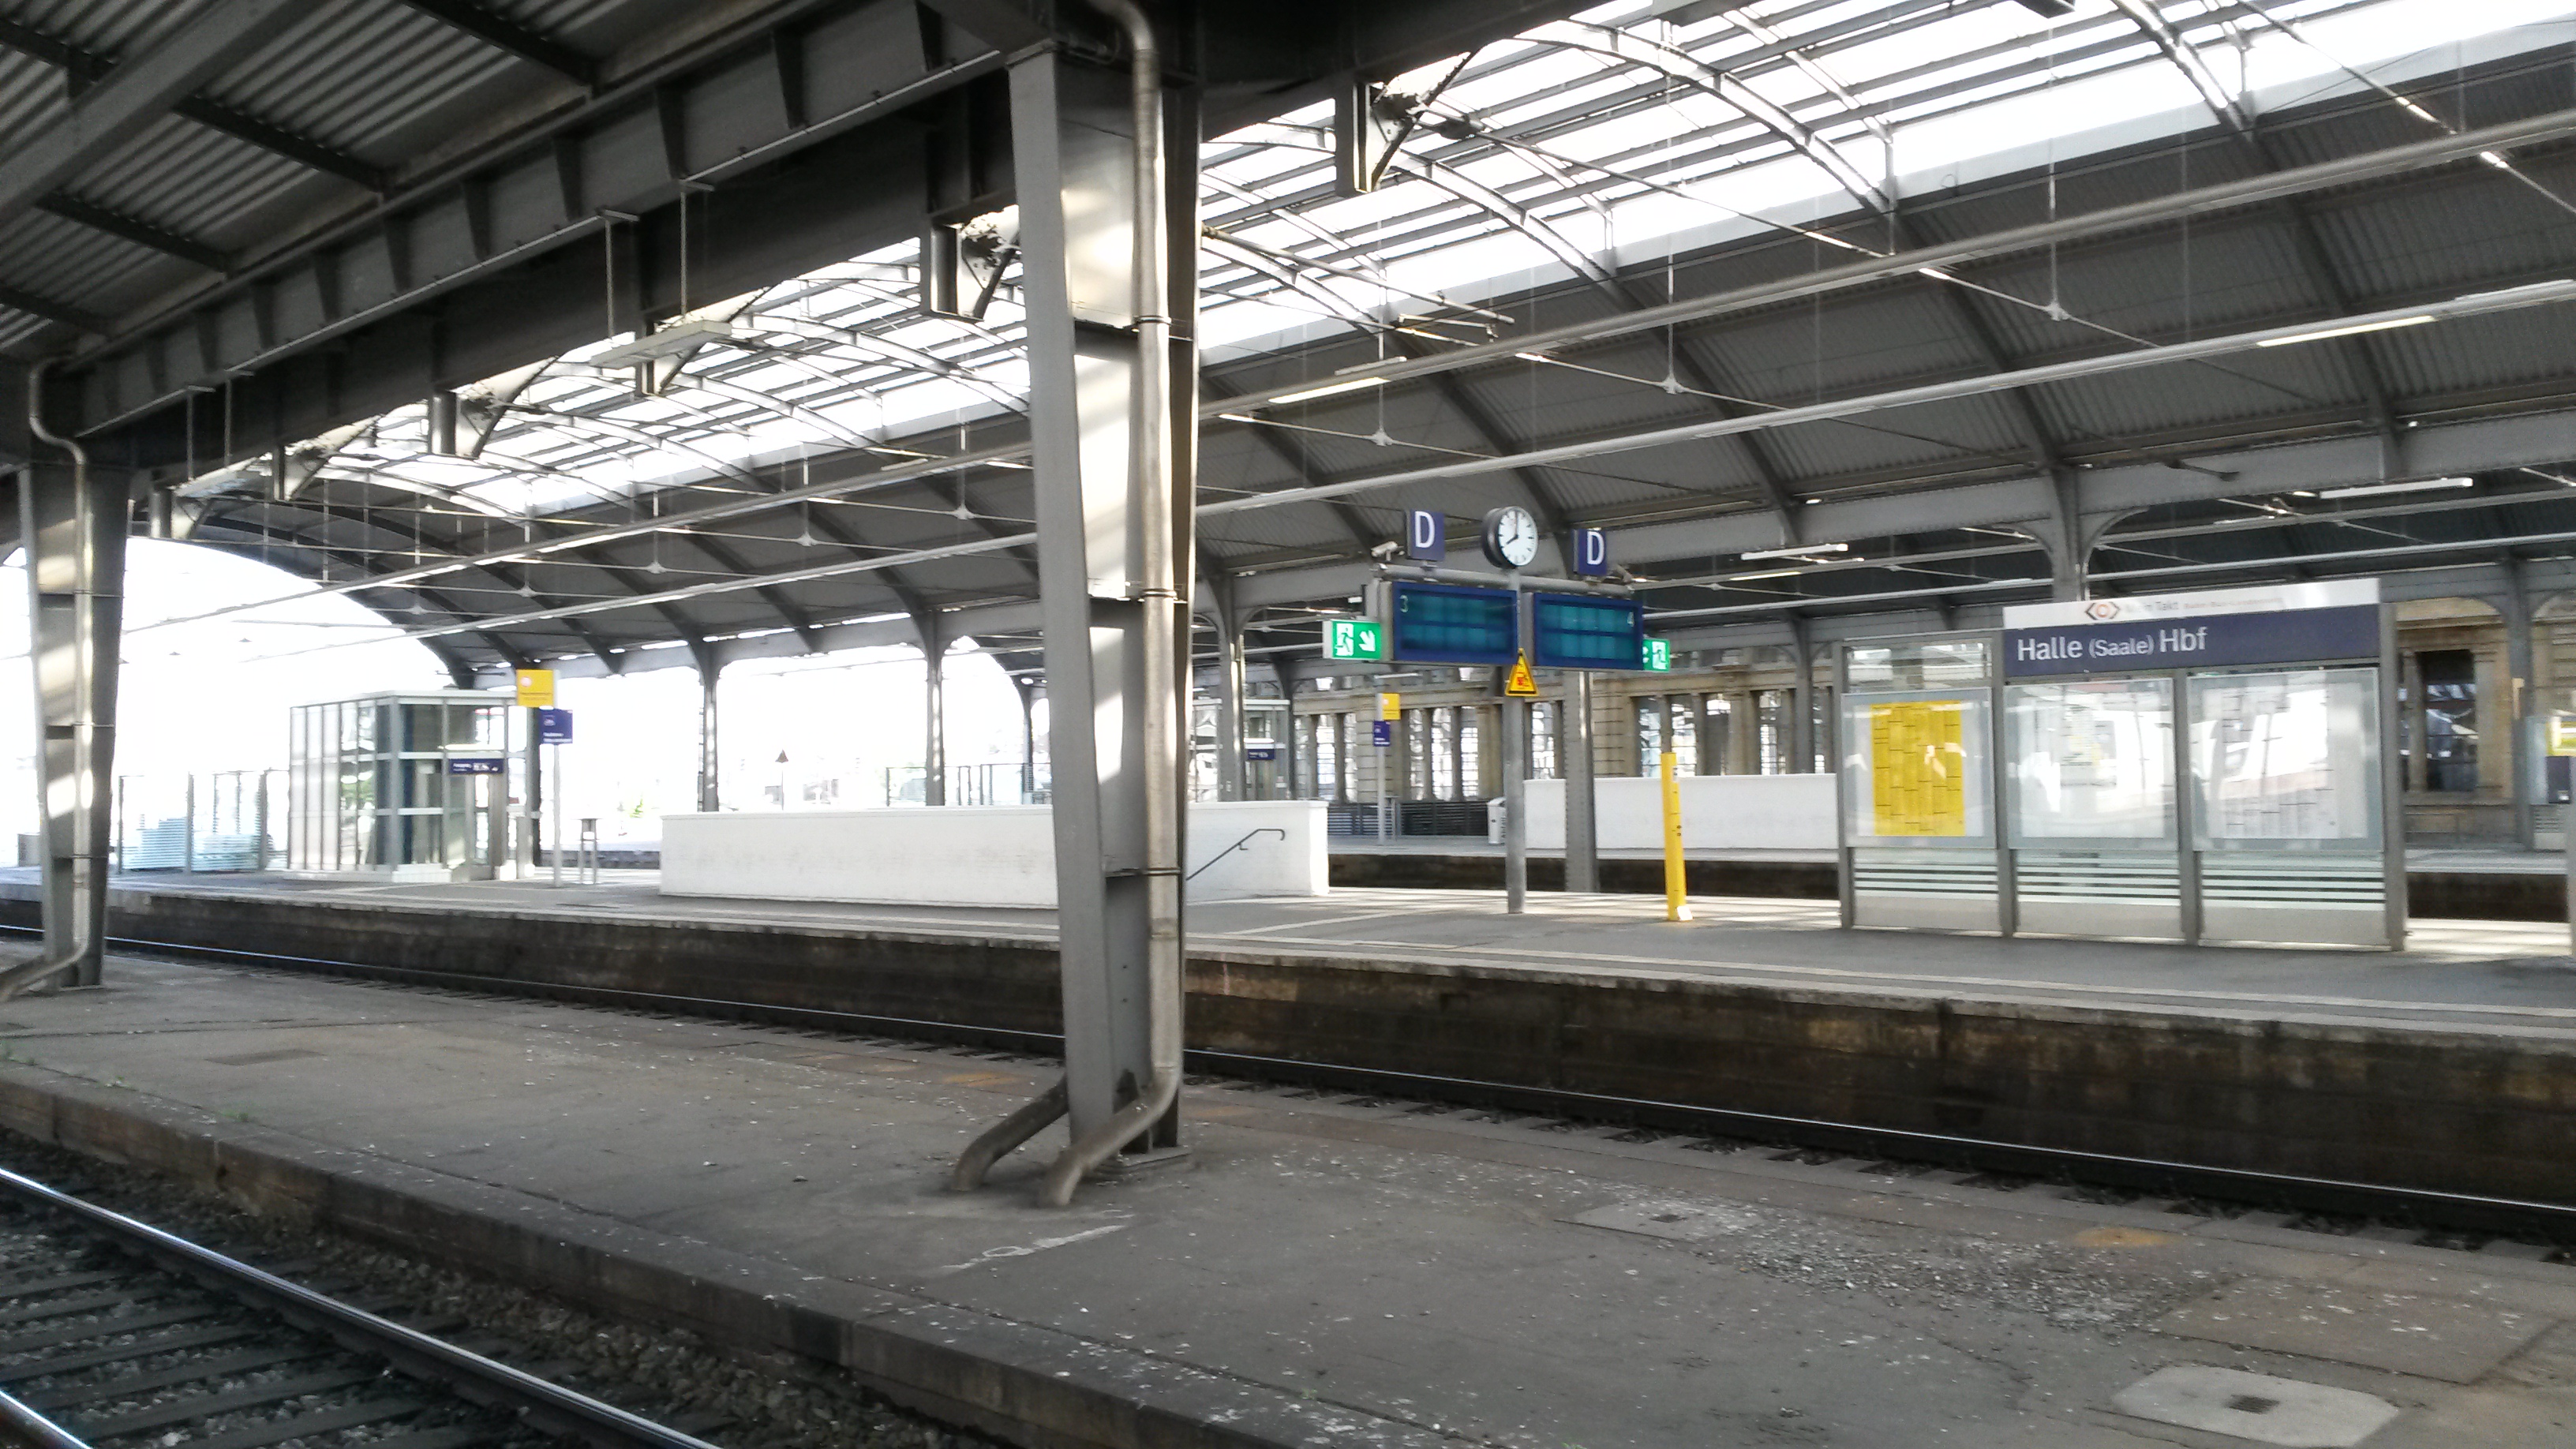 Halle (Saale) Hbf : Leere Gleise und Bahnsteige während des Streiks